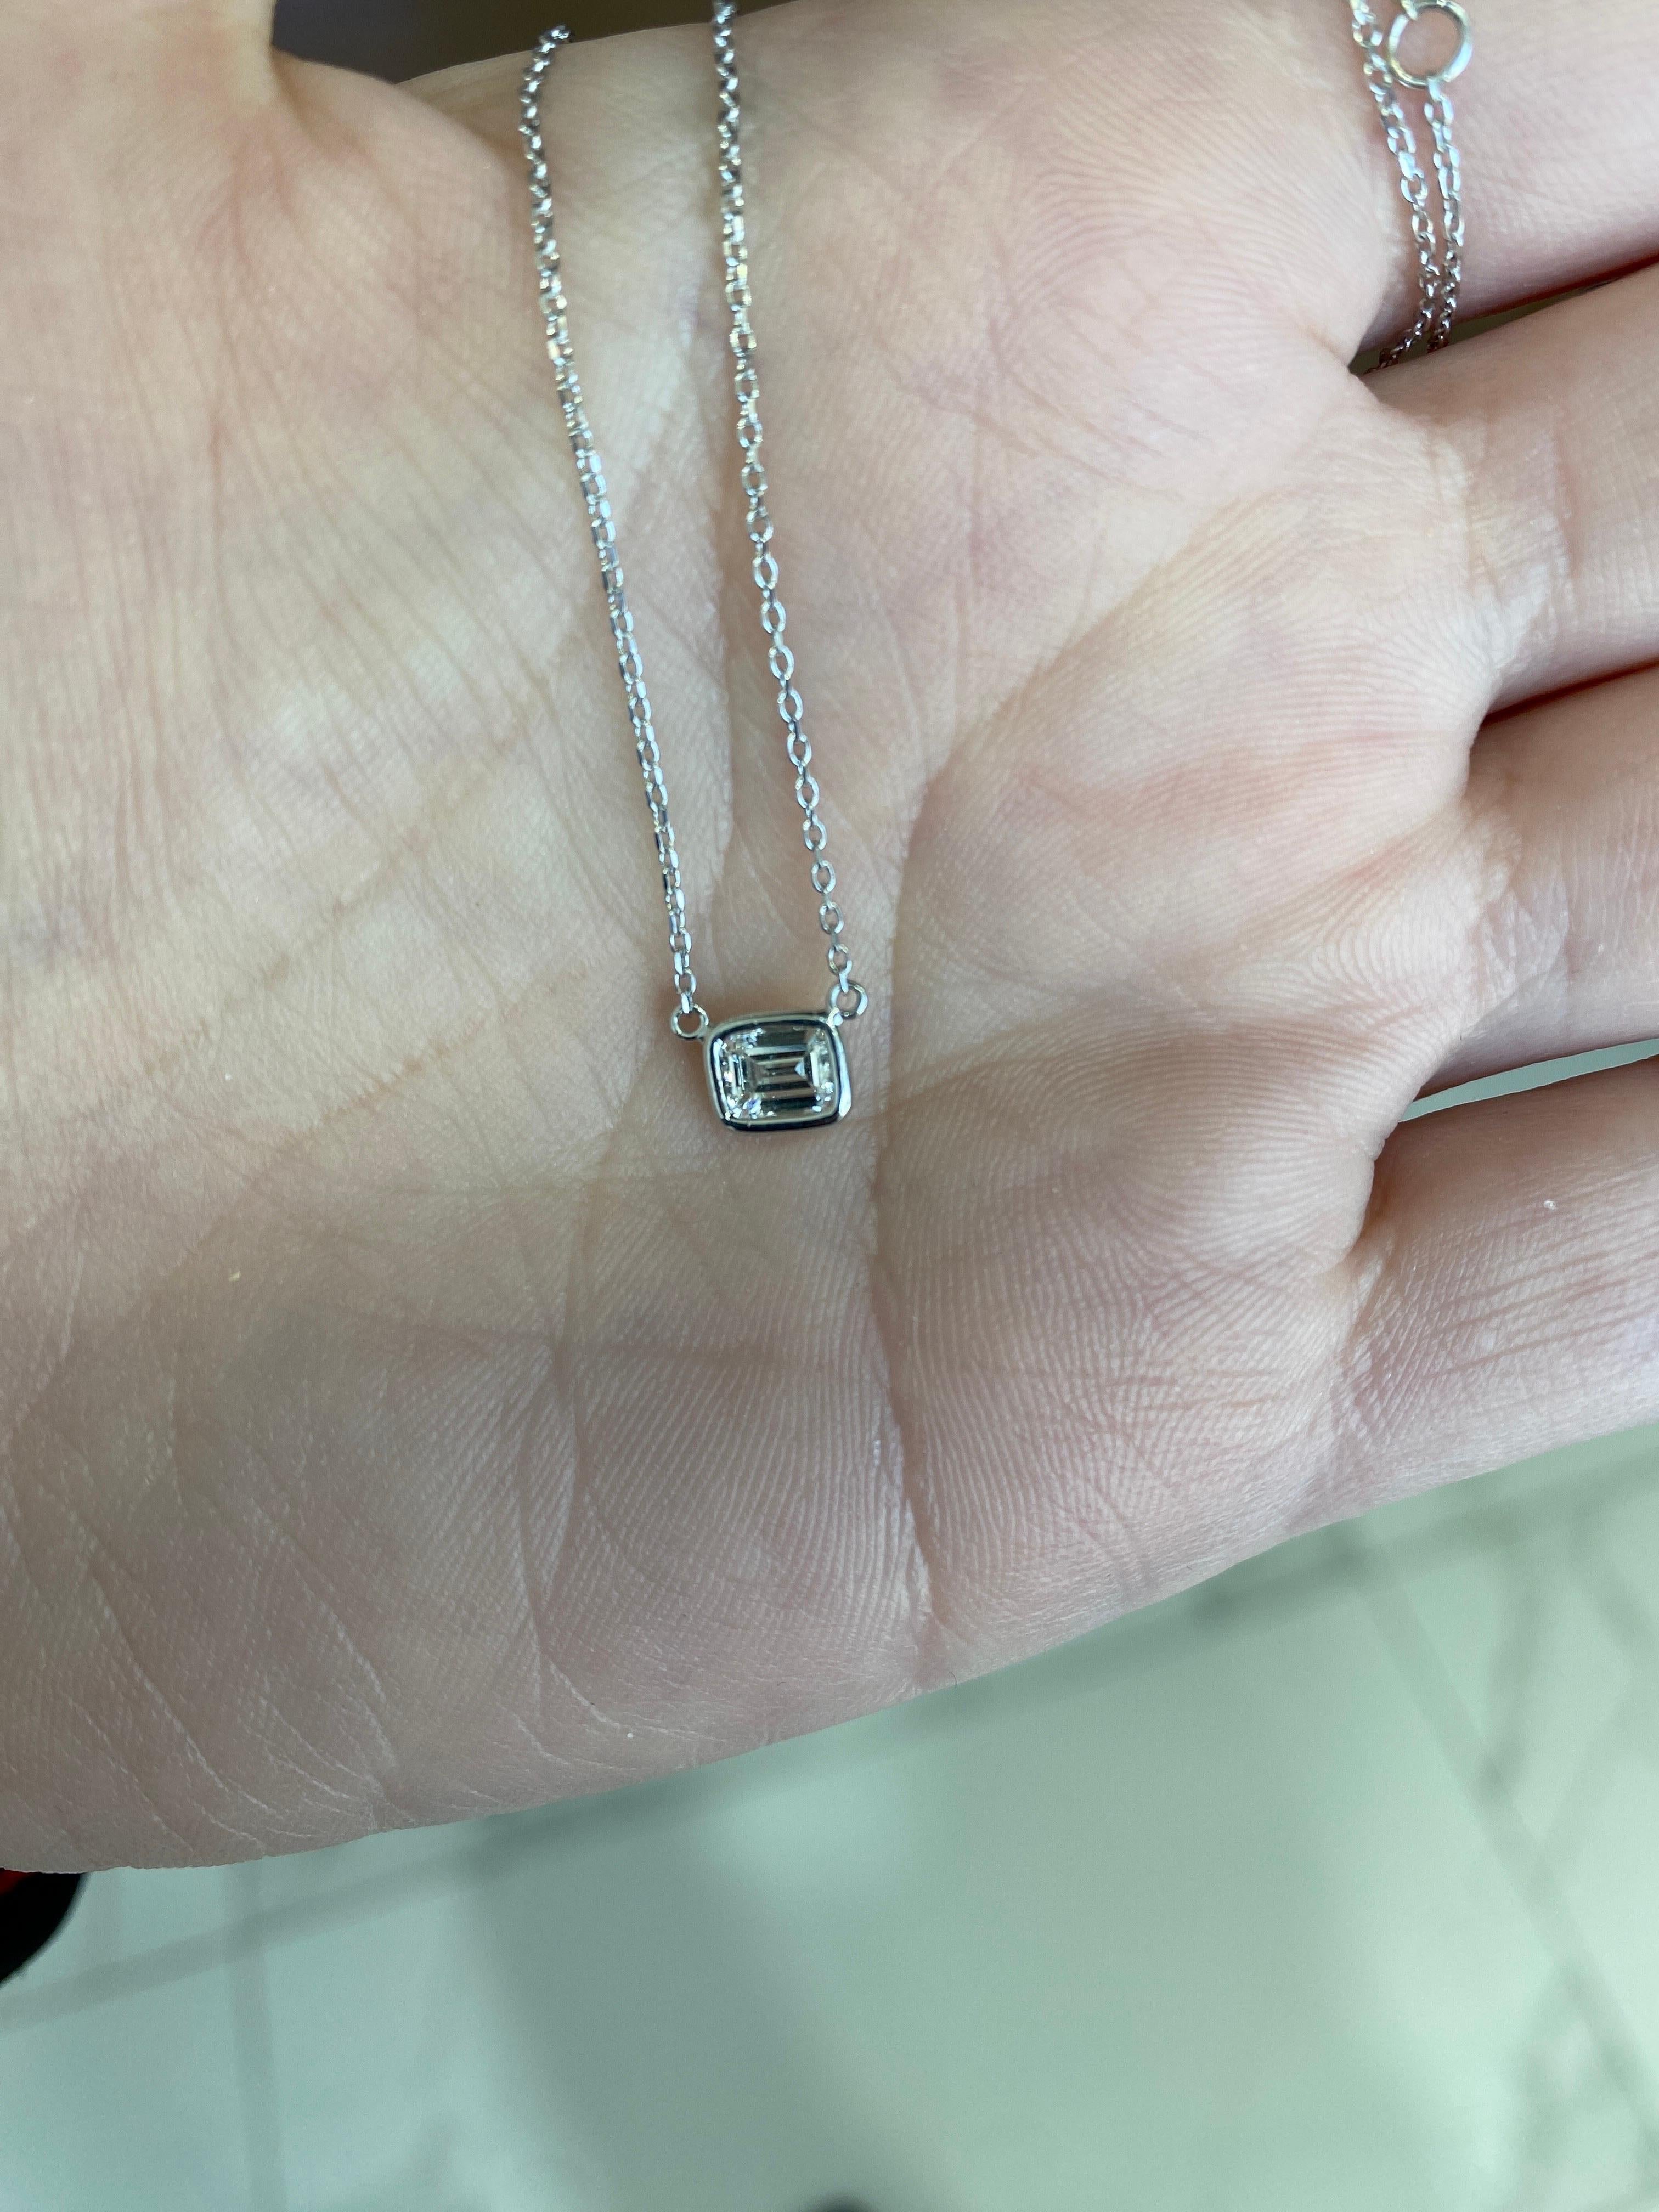 0.44 Carat Natural Emerald Cut Bezel Set Diamond Pendant Necklace 14k White Gold For Sale 3